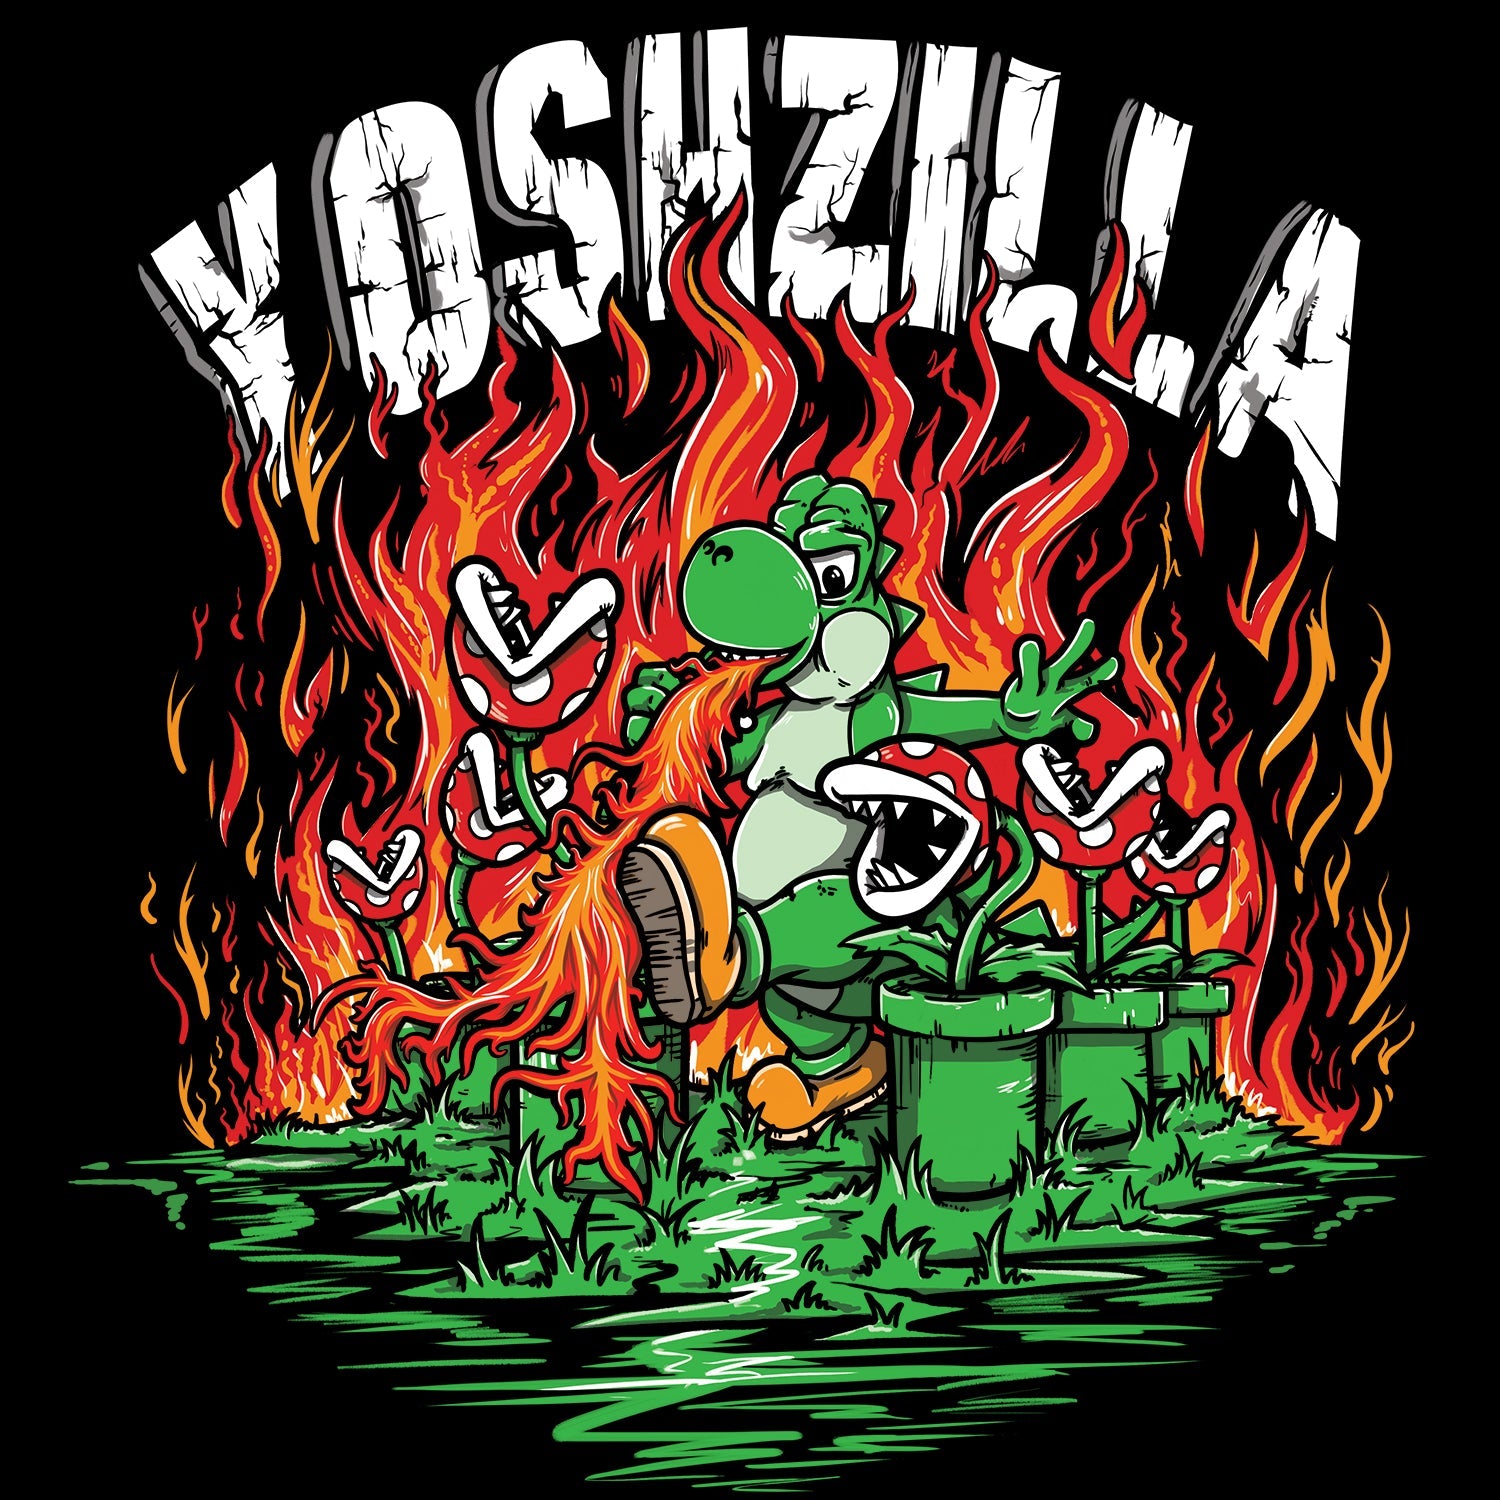 Yoshzilla T Shirt